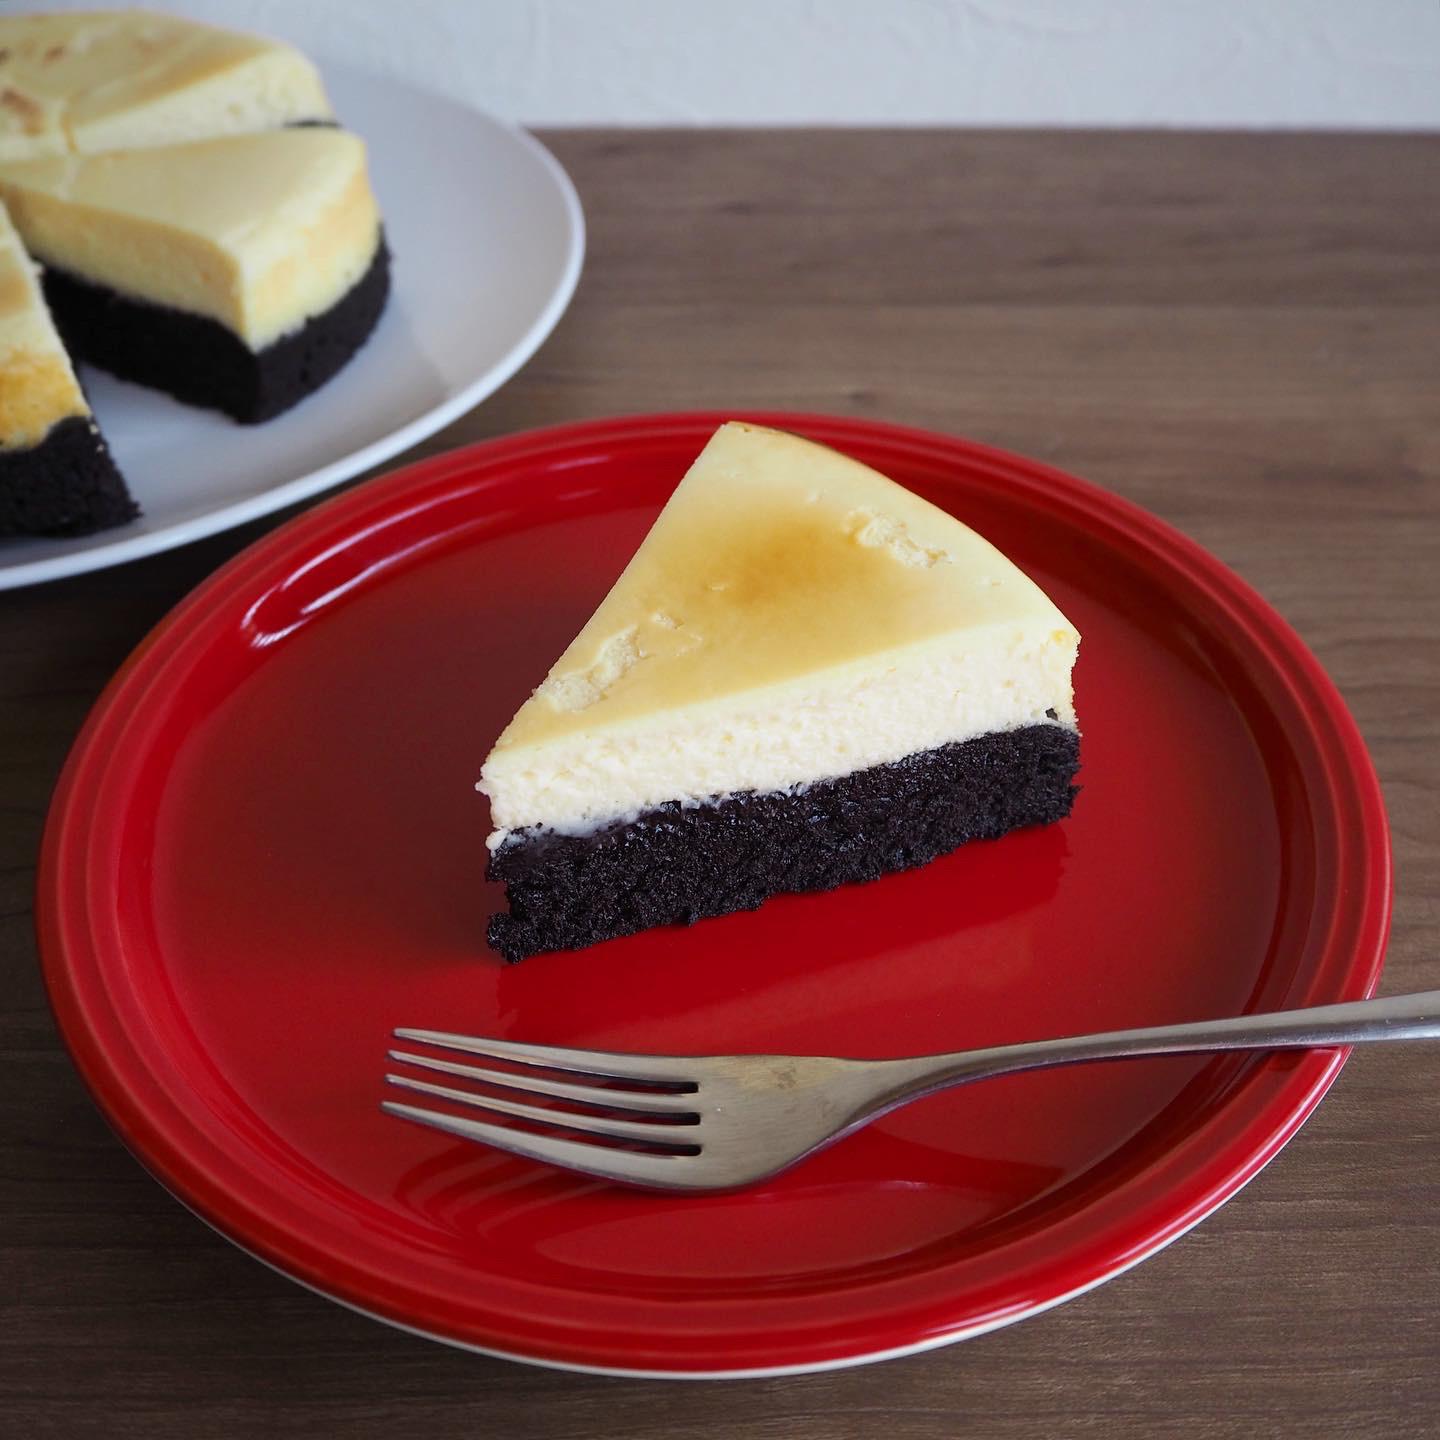 夢のハイブリッドスイーツ ブラウニーボトムチーズケーキのレシピ 石野美和が投稿したフォトブック Sharee